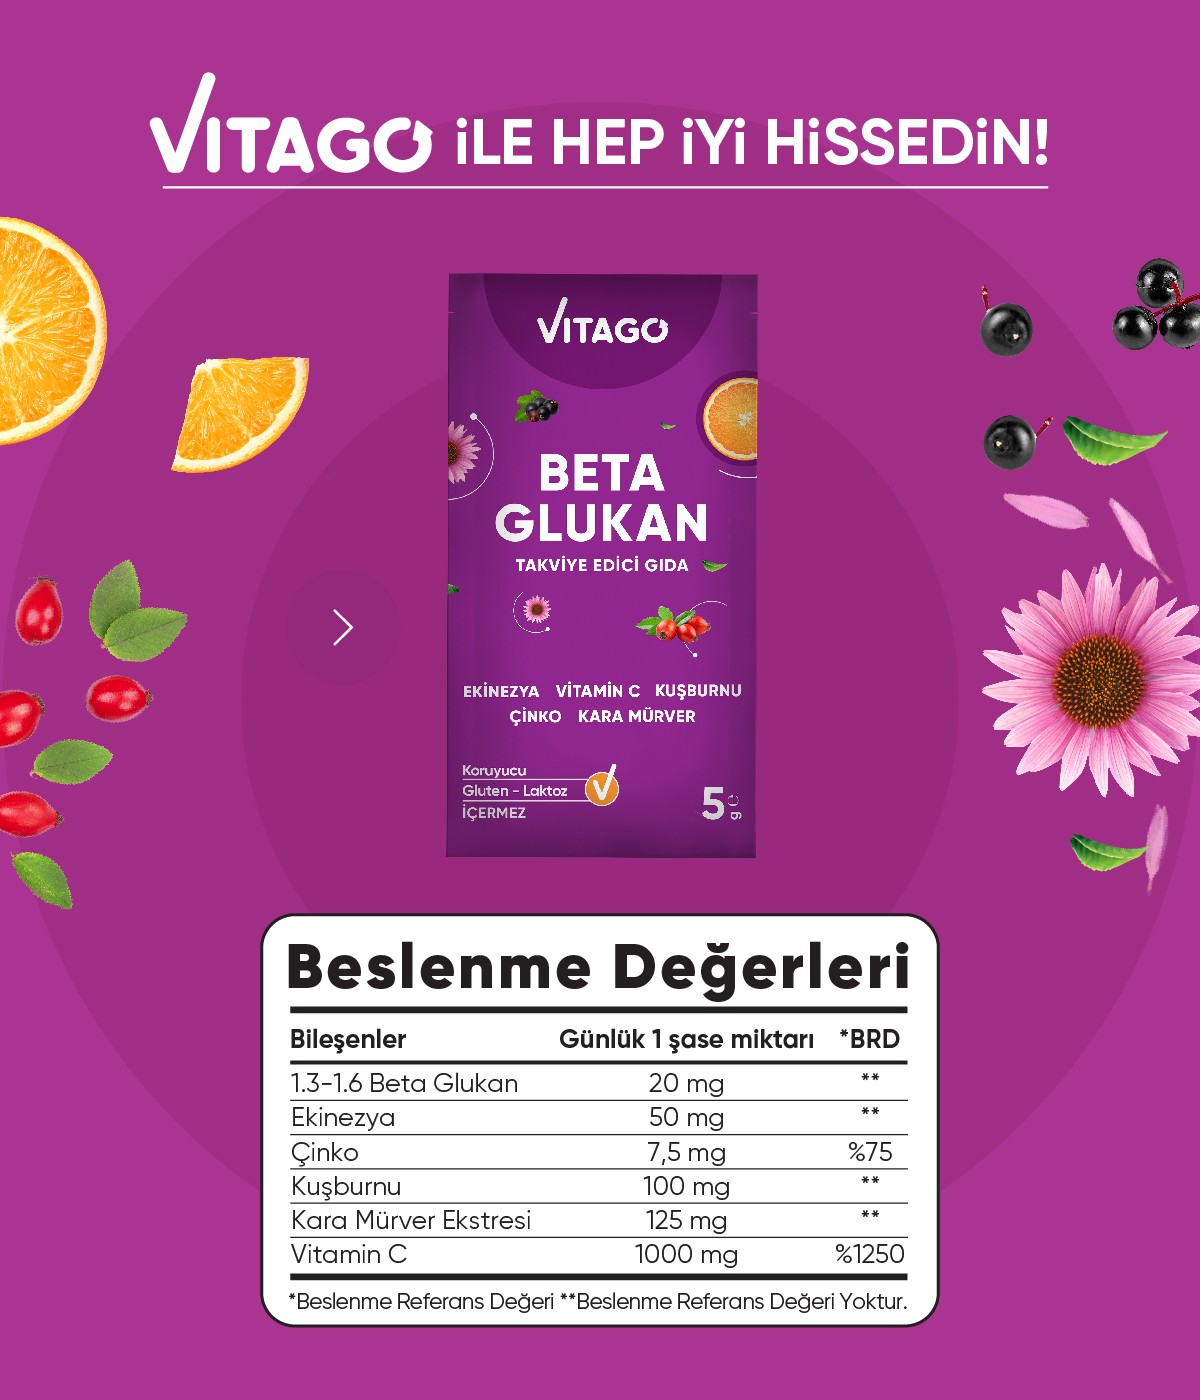 Vitago Beta Glukan, Vitamin C, Karamürver İçeren Effervesan Toz Takviye Edici Gıda